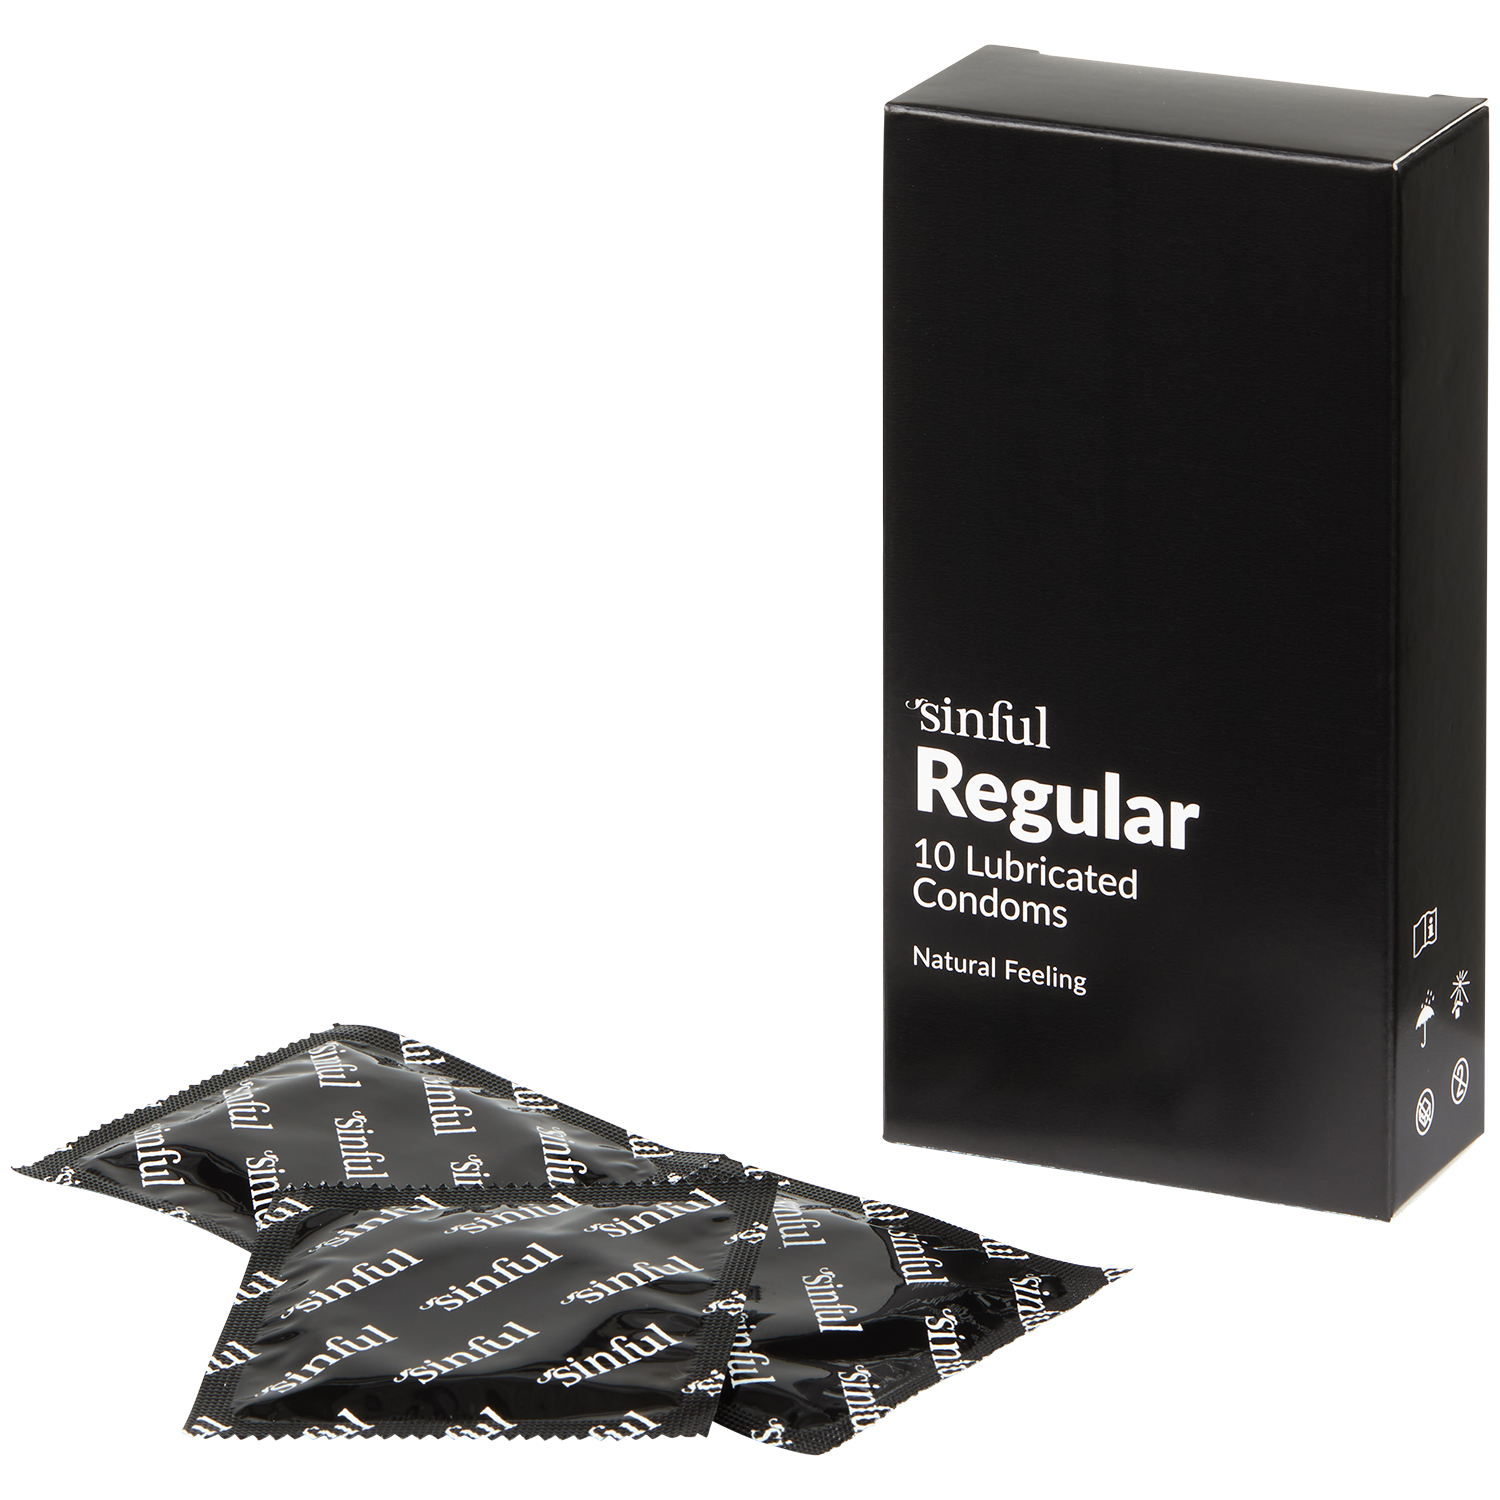 Sinful Regular Kondomer 10 stk      - Klar